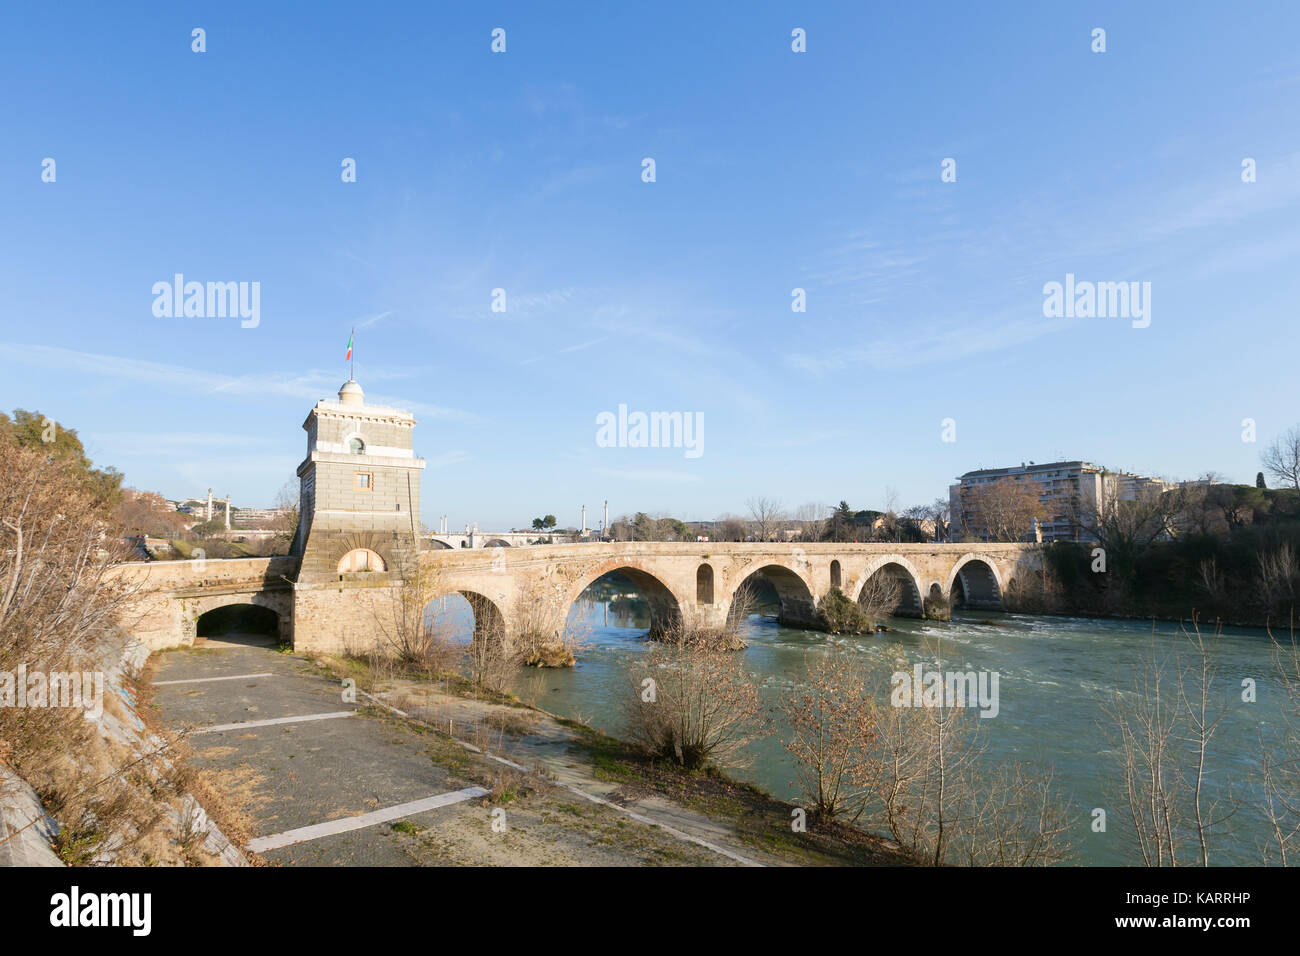 Milvian bridge, Rome, Italy Stock Photo